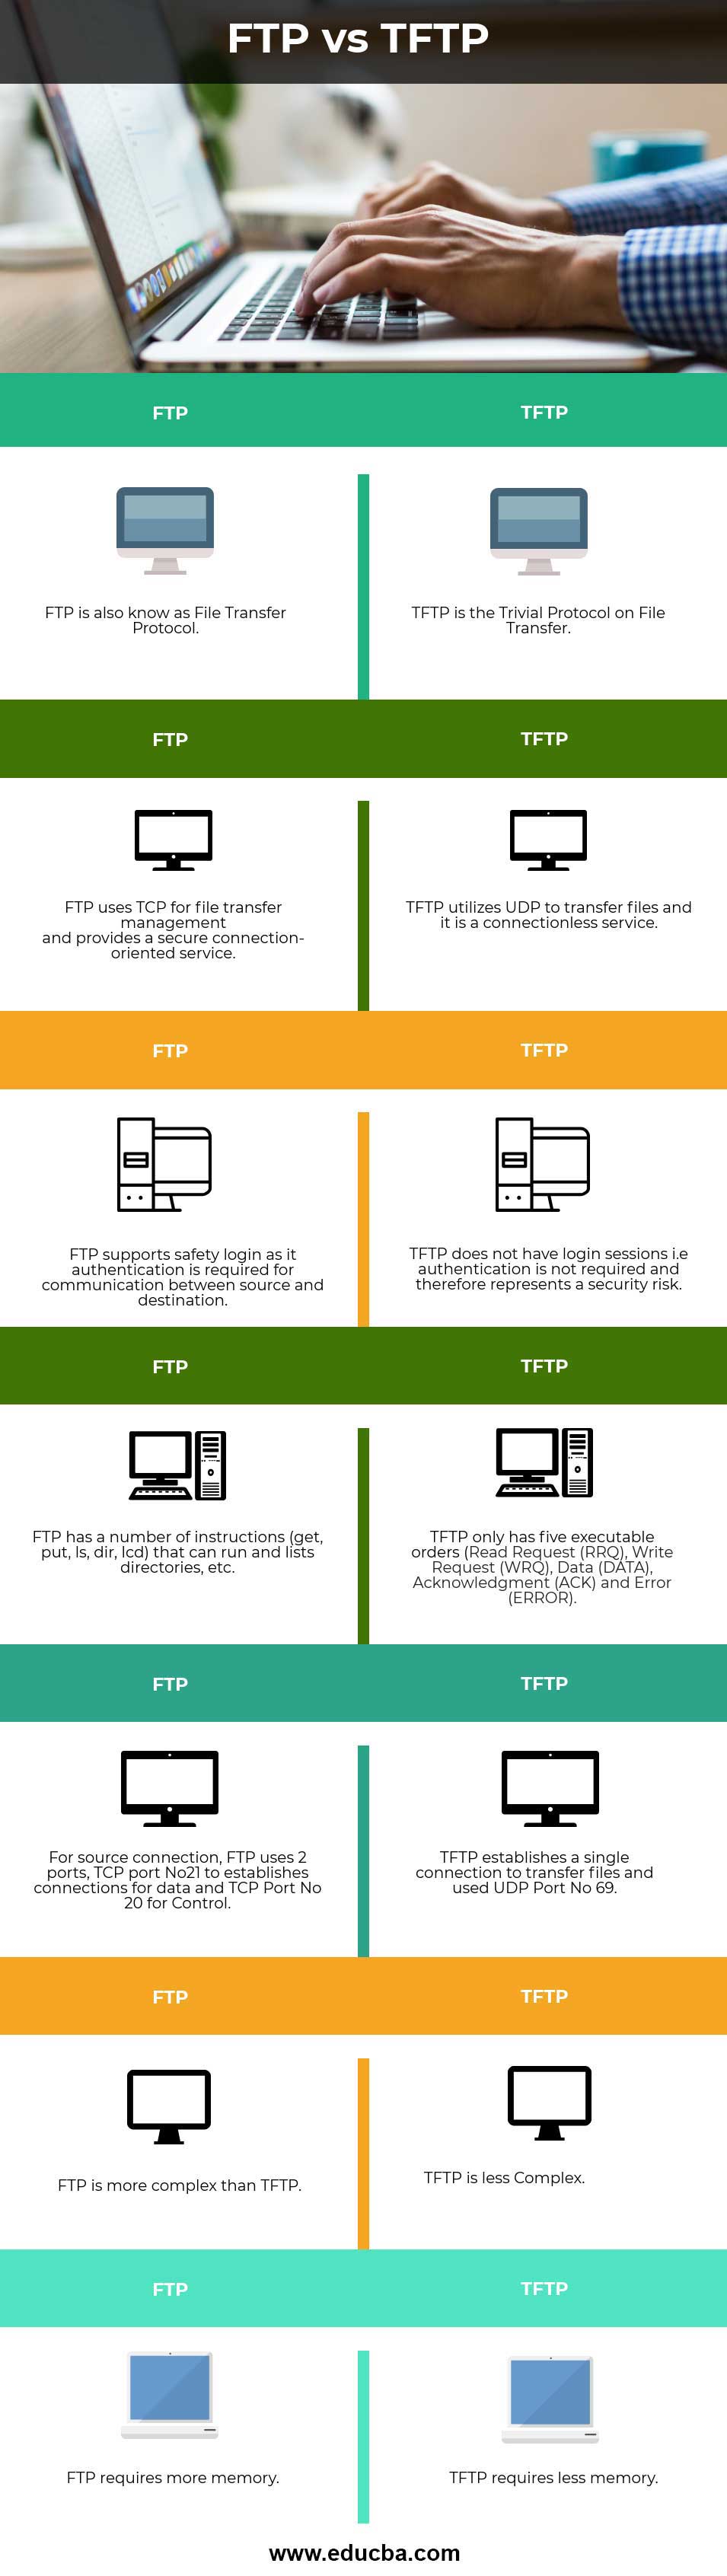 FTP-vs-TFTP-info